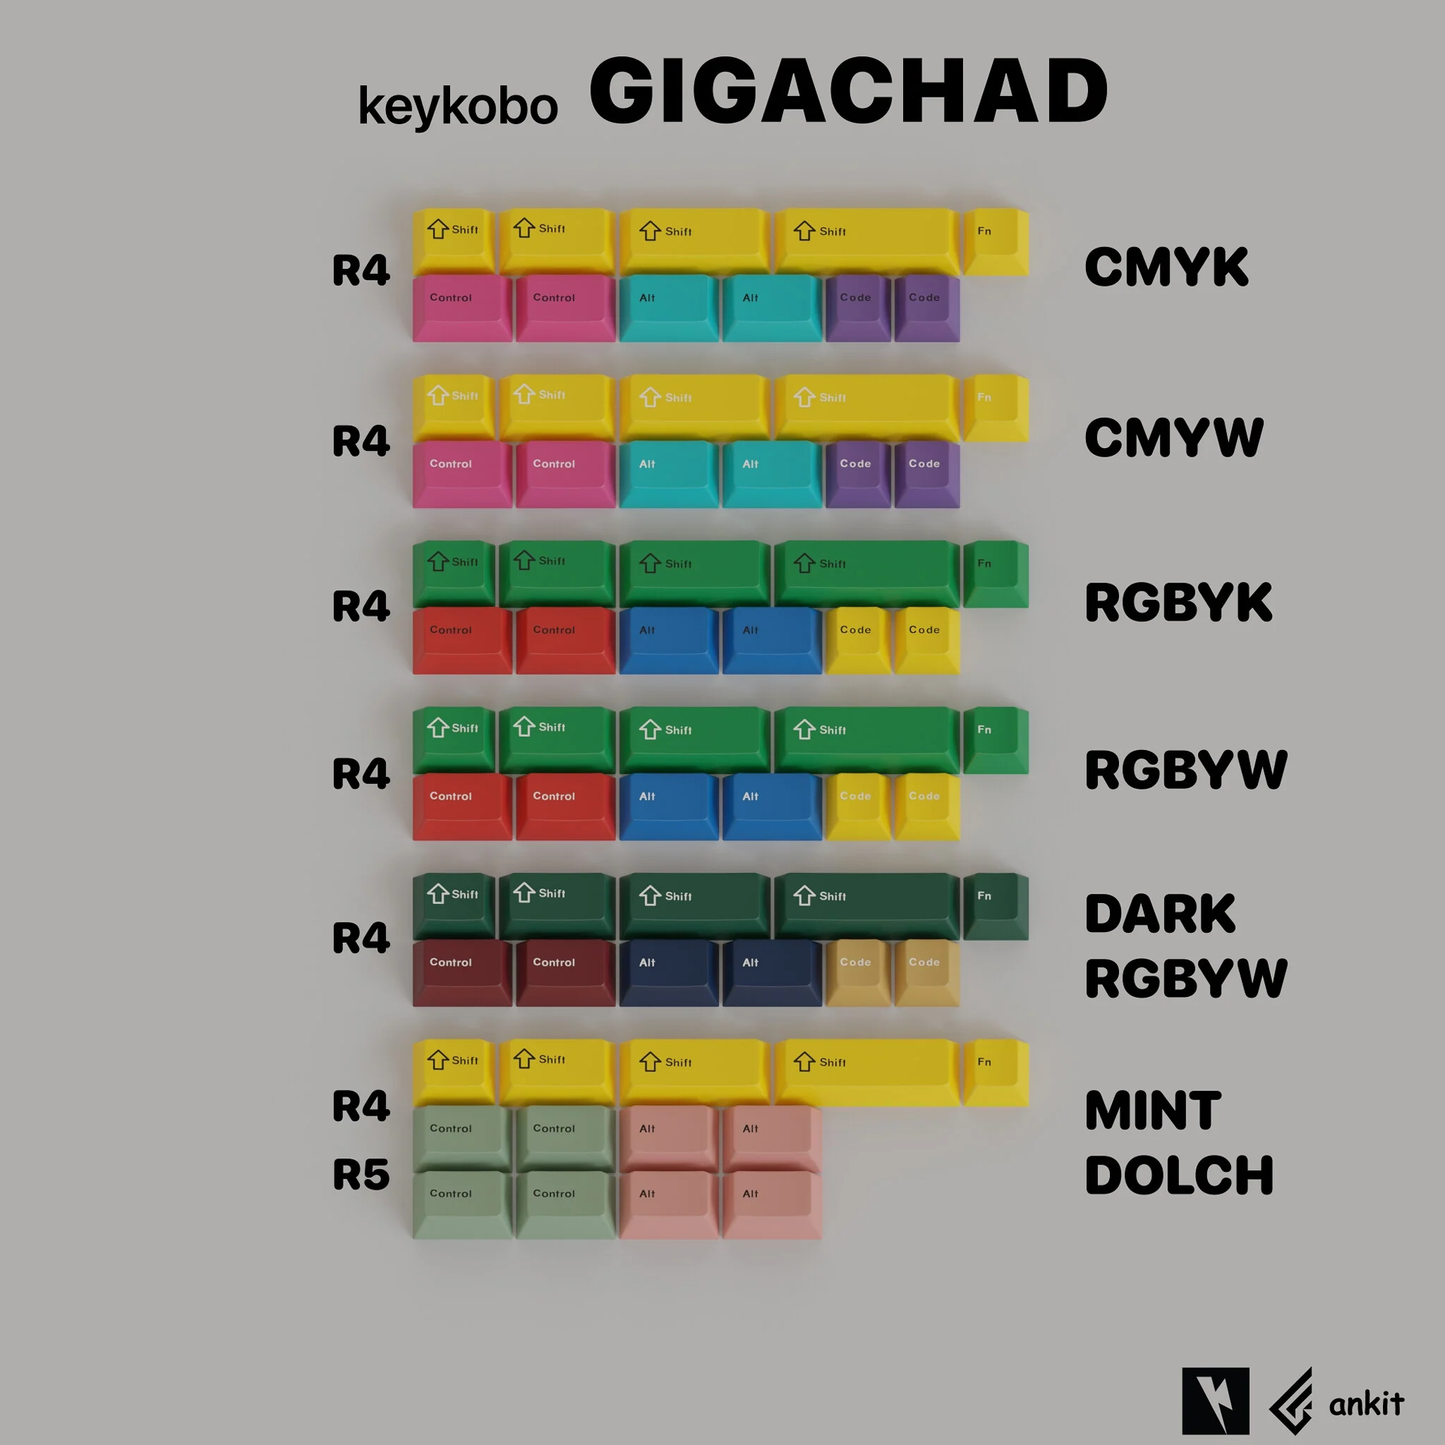 Keykobo Gigachad and Gigachild